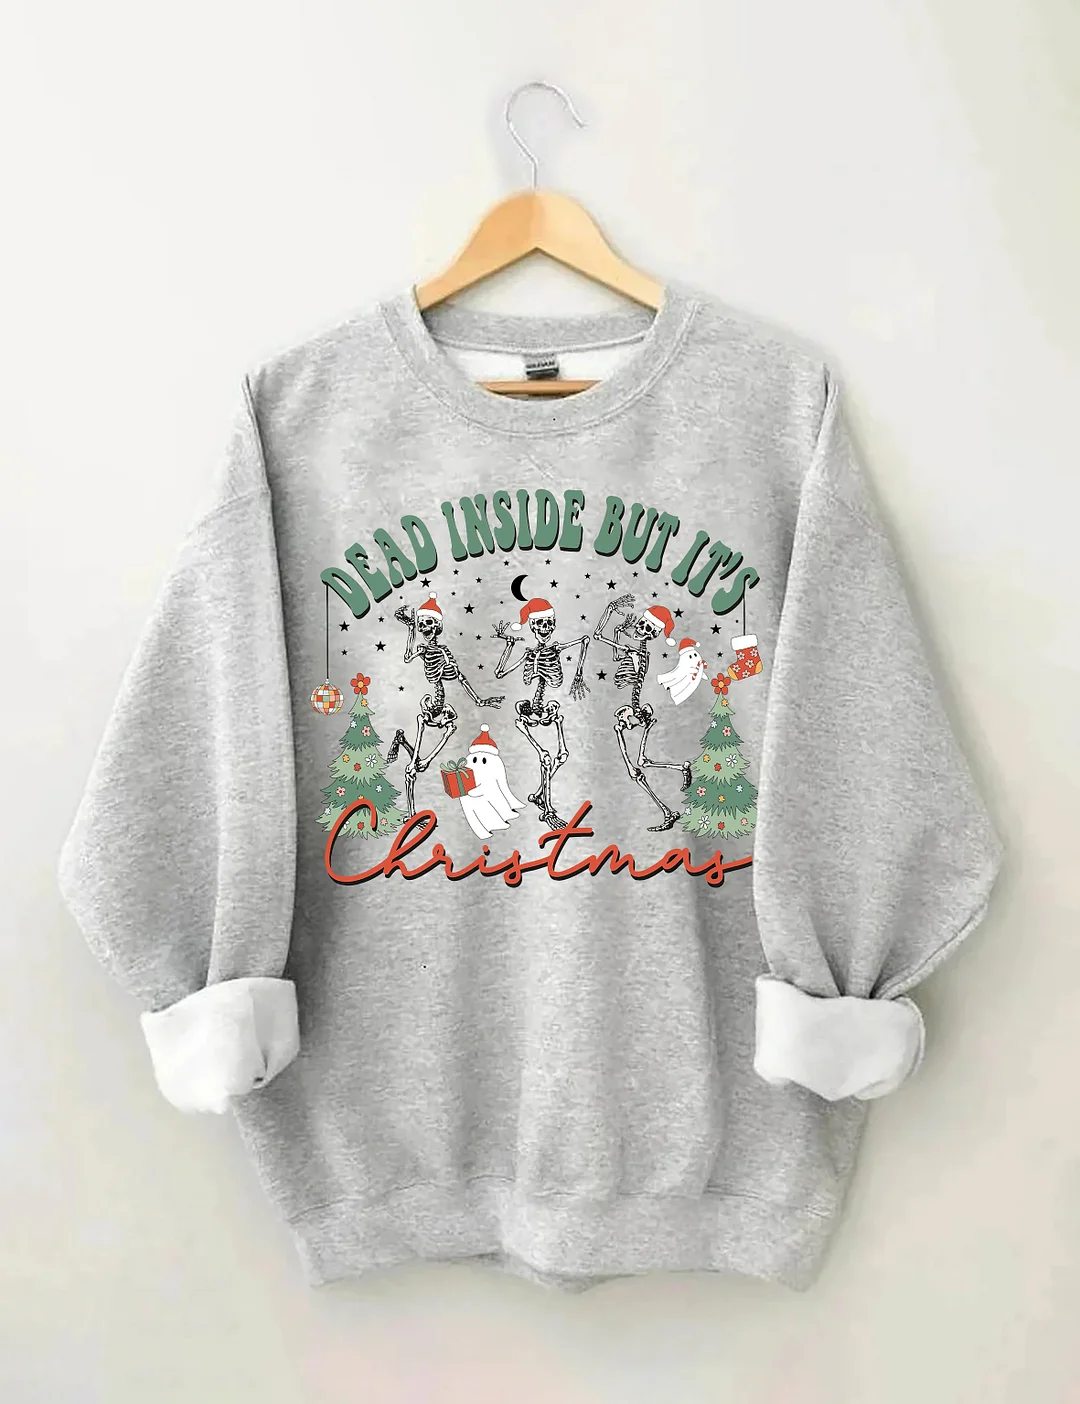 Dead Inside But It's Christmas Sweatshirt